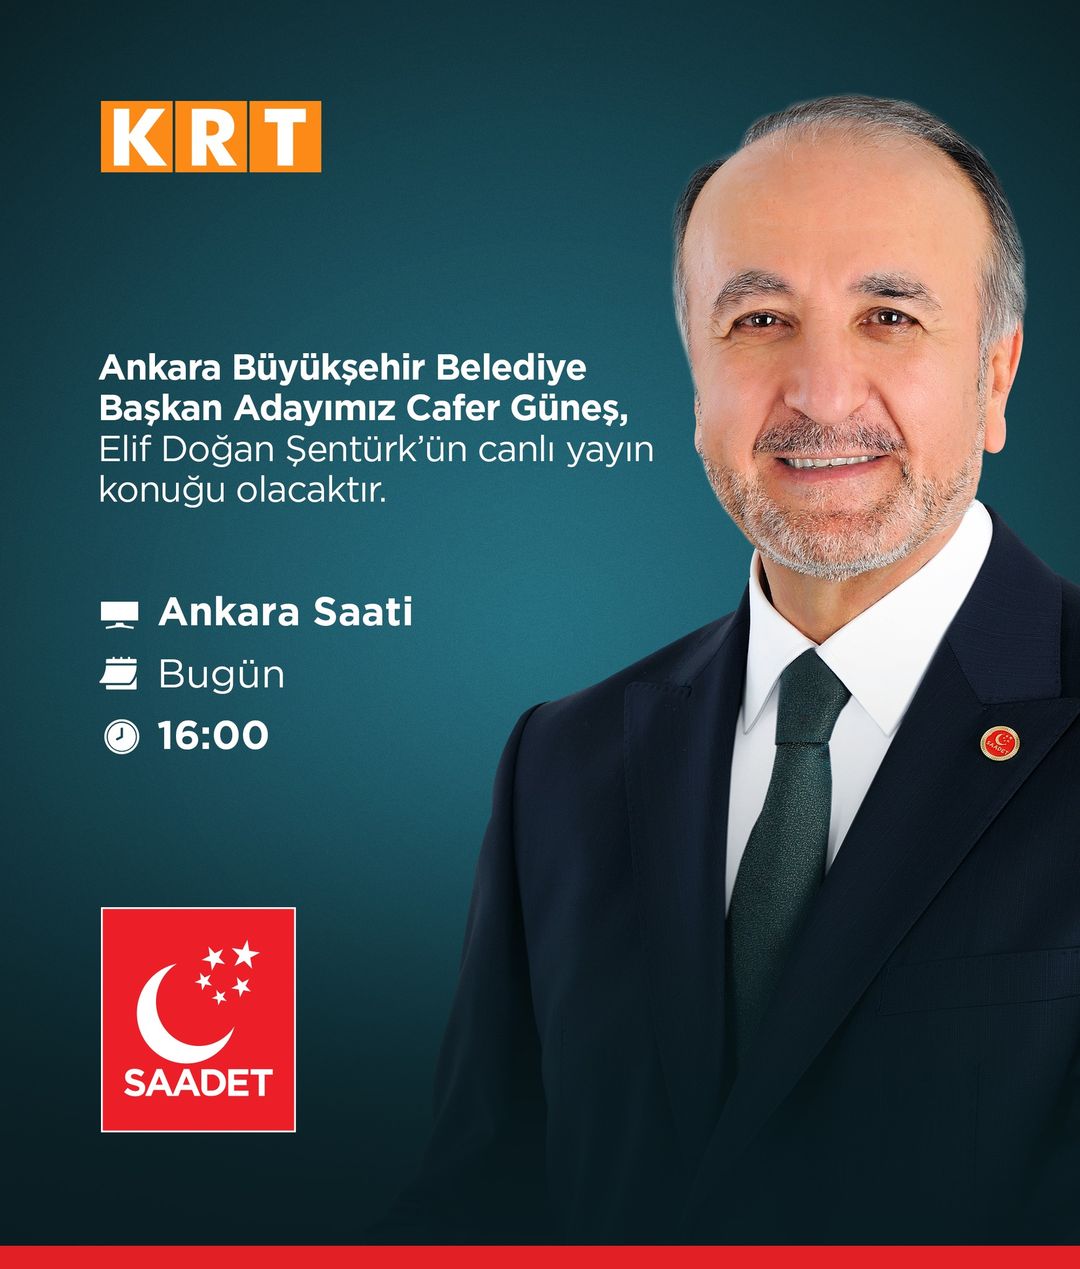 Ankara Büyükşehir Belediye Başkan Adayı Cafer Güneş Yerel Televizyonda Programa Katılıyor